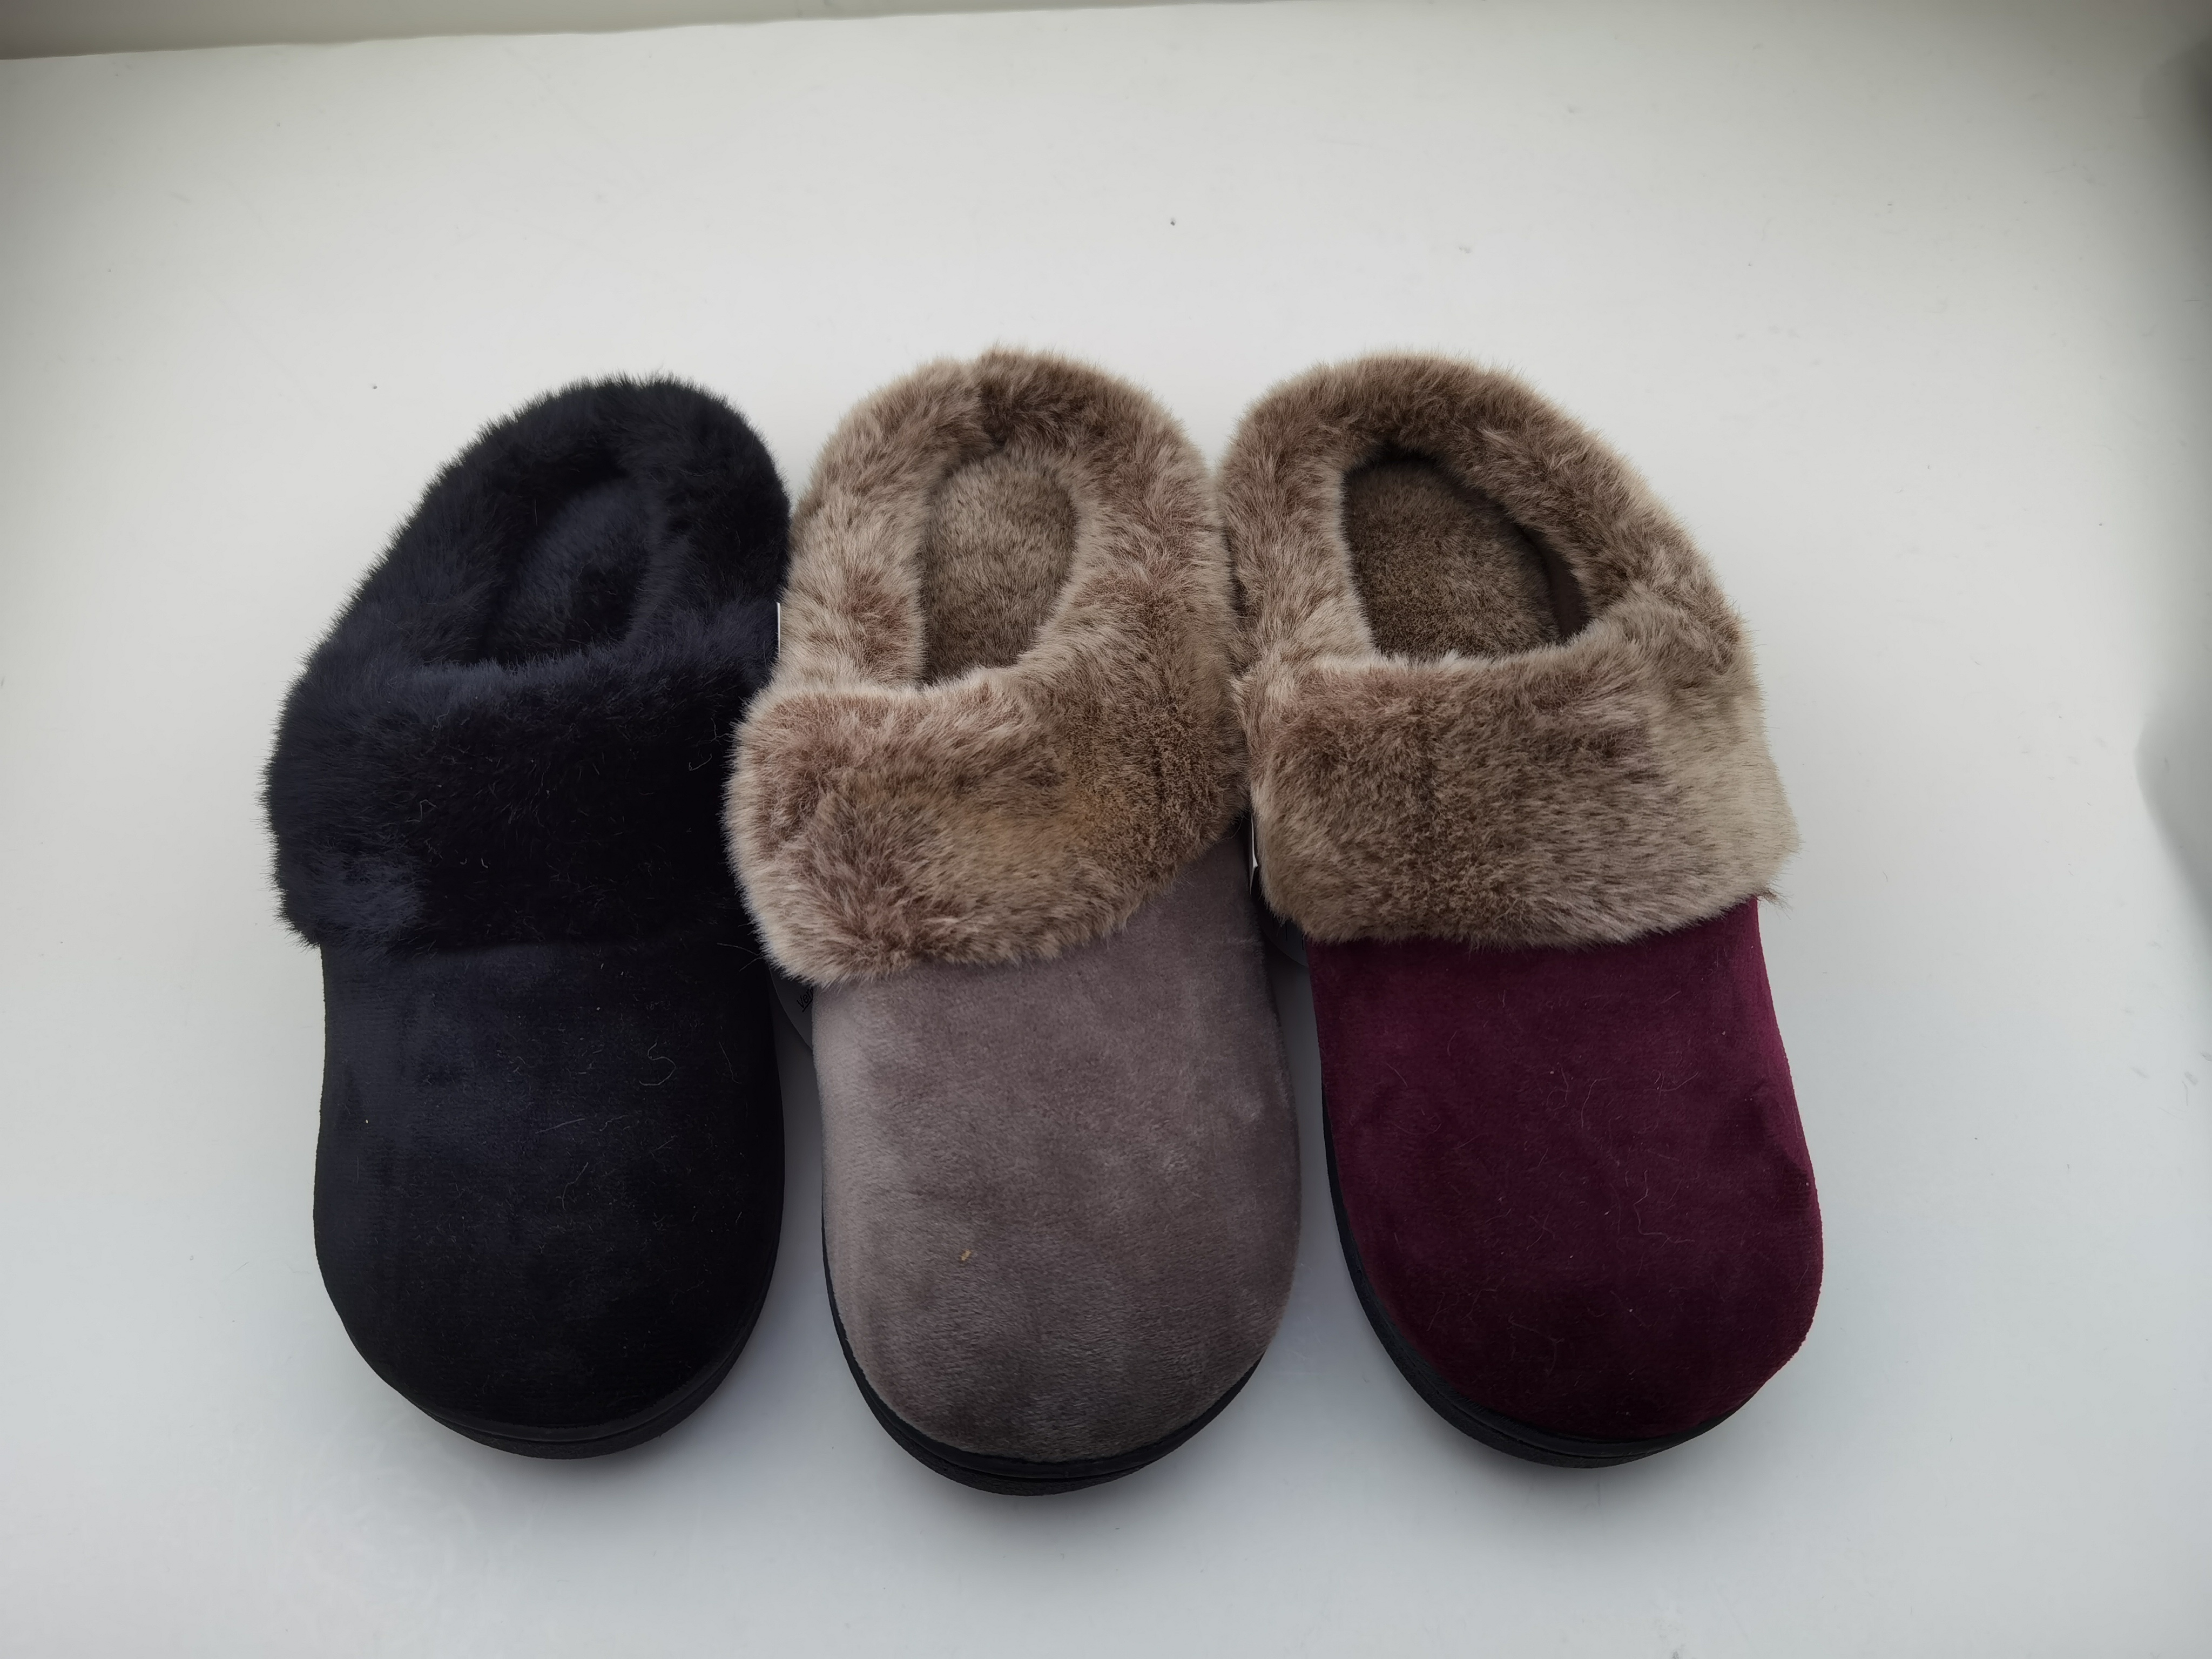 Women's Cozy Memory Foam Slippers Fuzzy Wool-Like Plush Fleece Lined House Shoes 